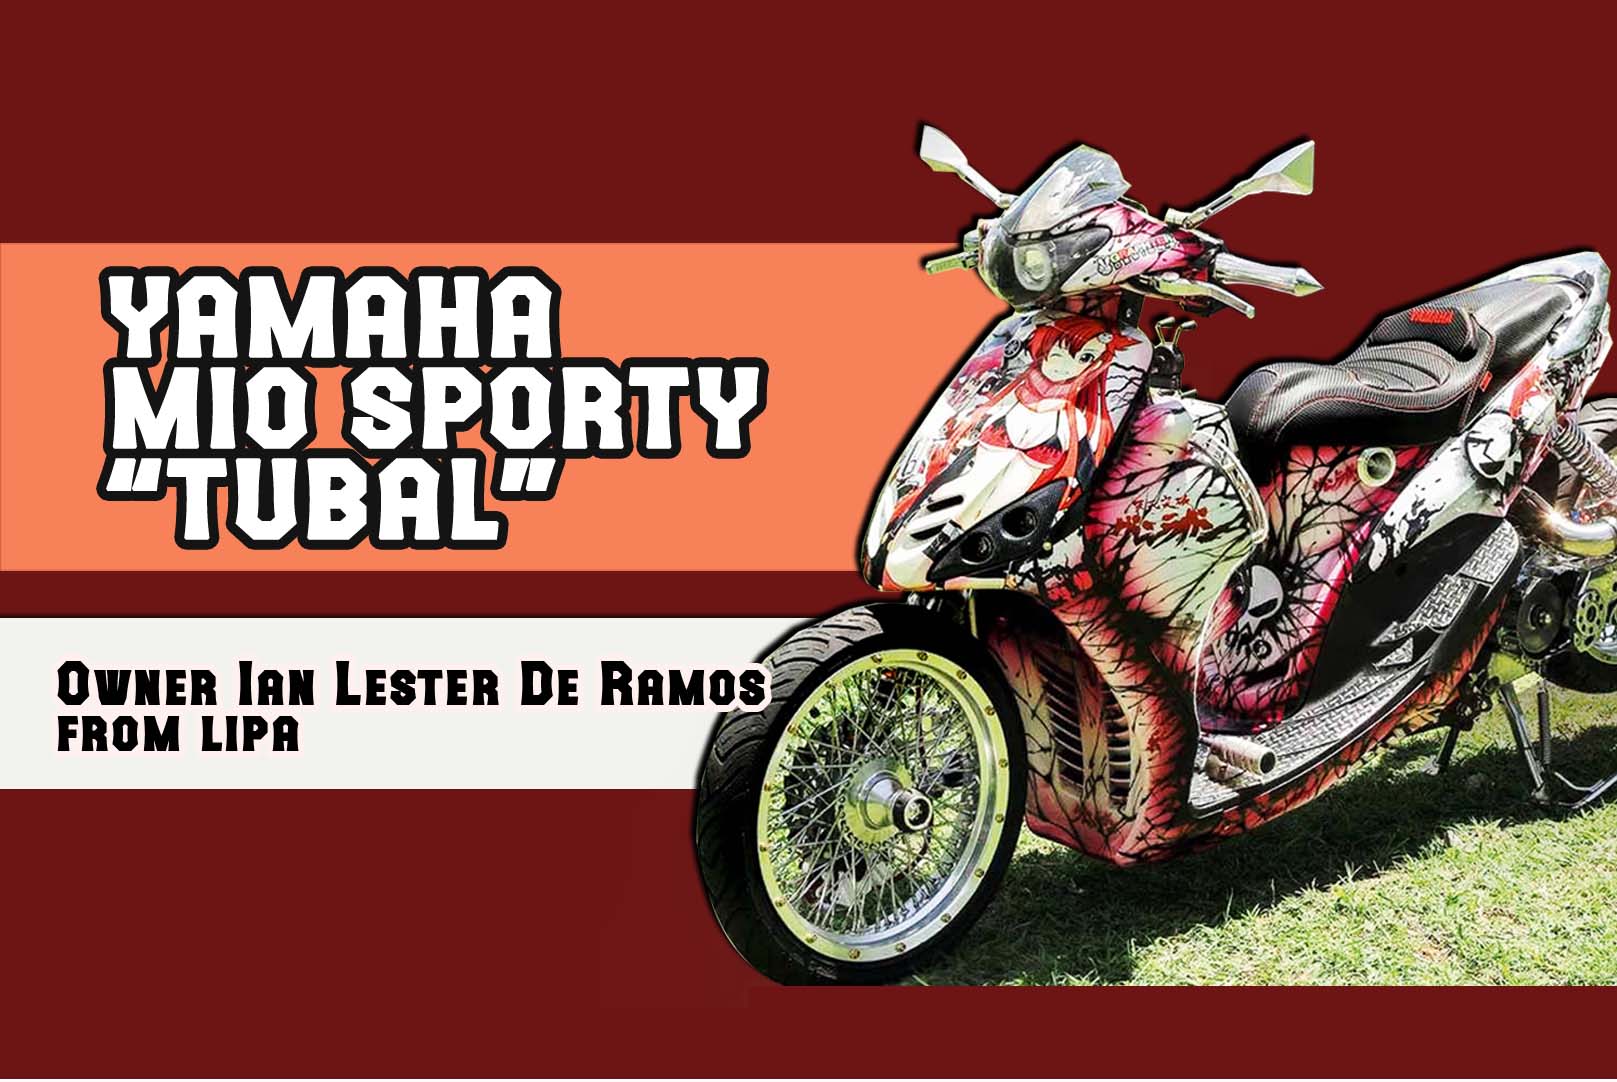 Mio Sporty Motor Show - impremedia.net